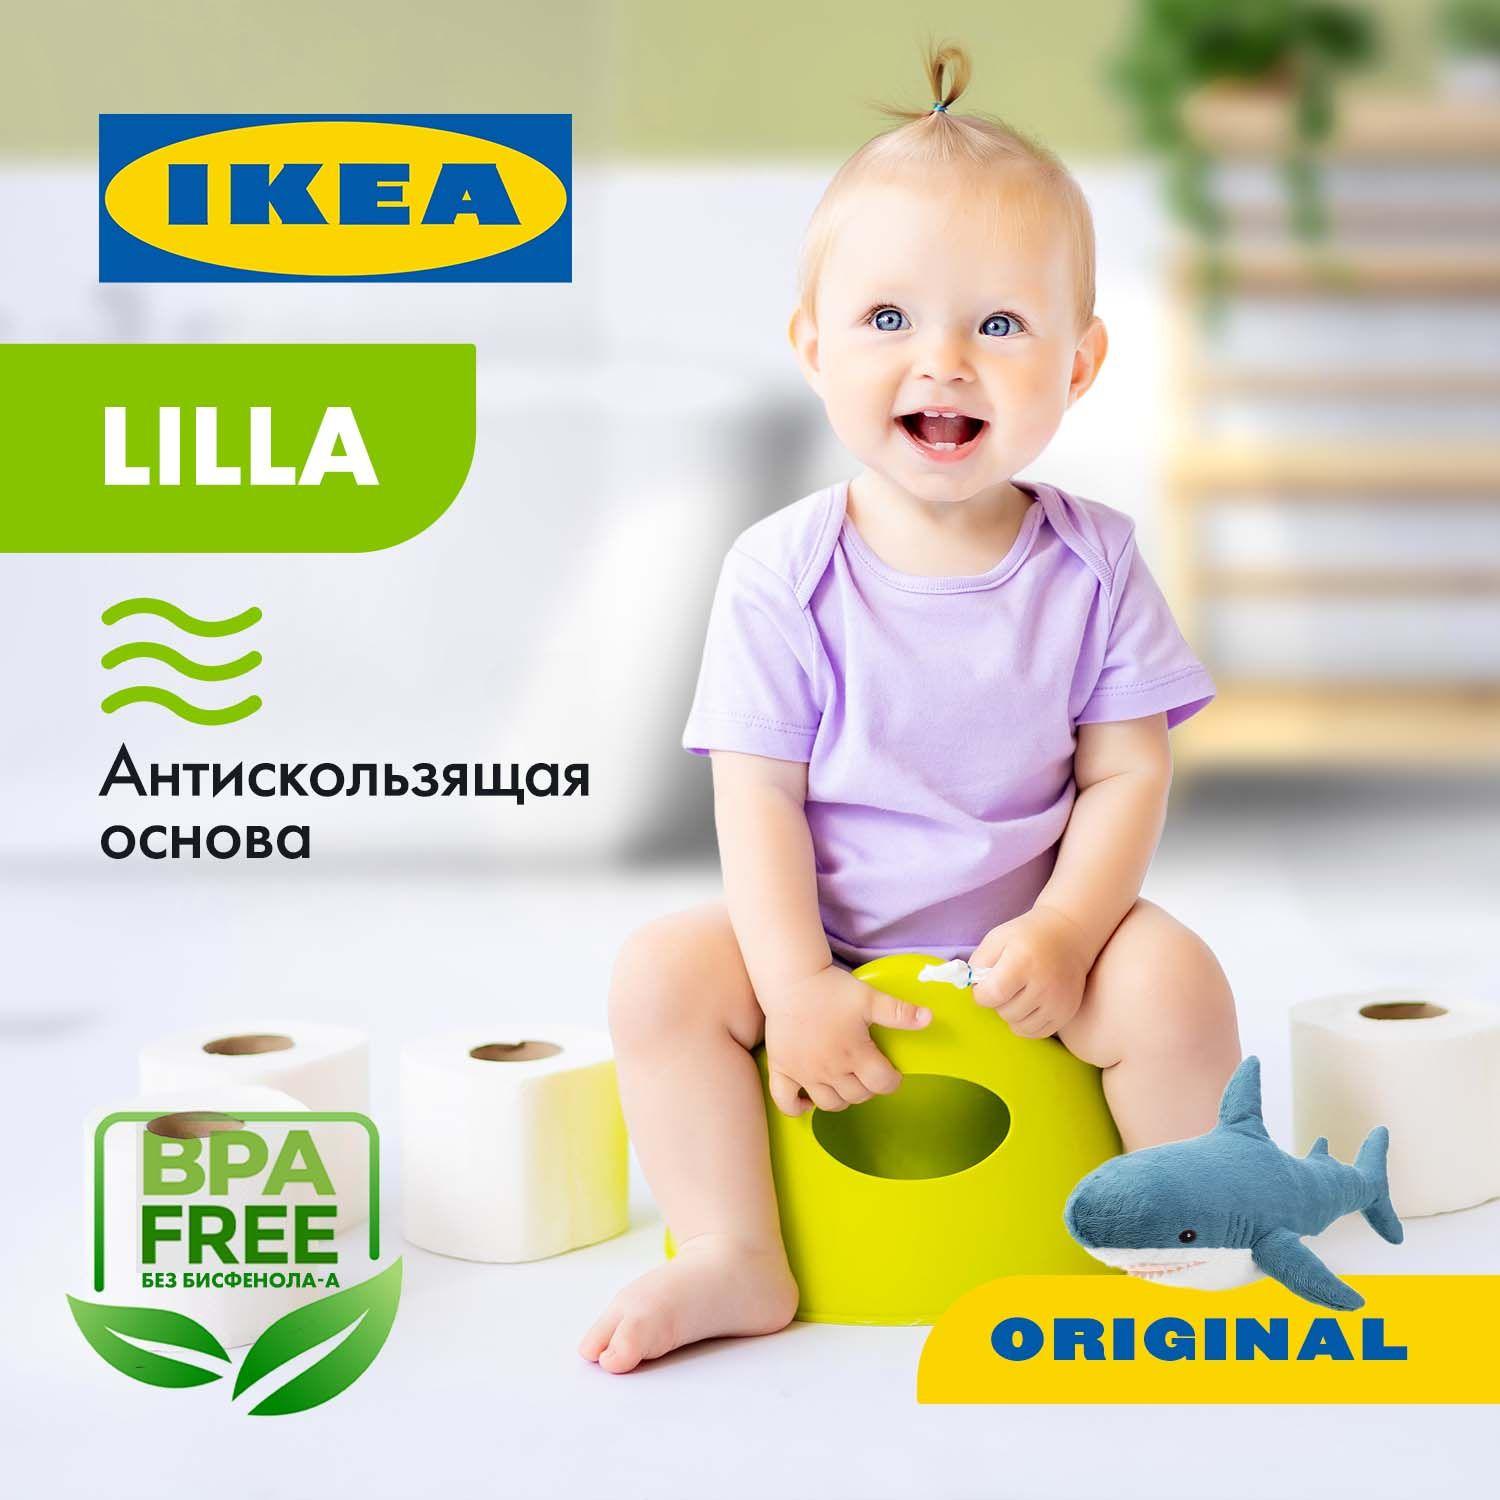 Горшок детский обтекаемой формы IKEA LILLA, пластмассовый для мальчика и девочки от 2 лет с маленькой спинкой и прорезиненными антискользящими накладками, зеленый